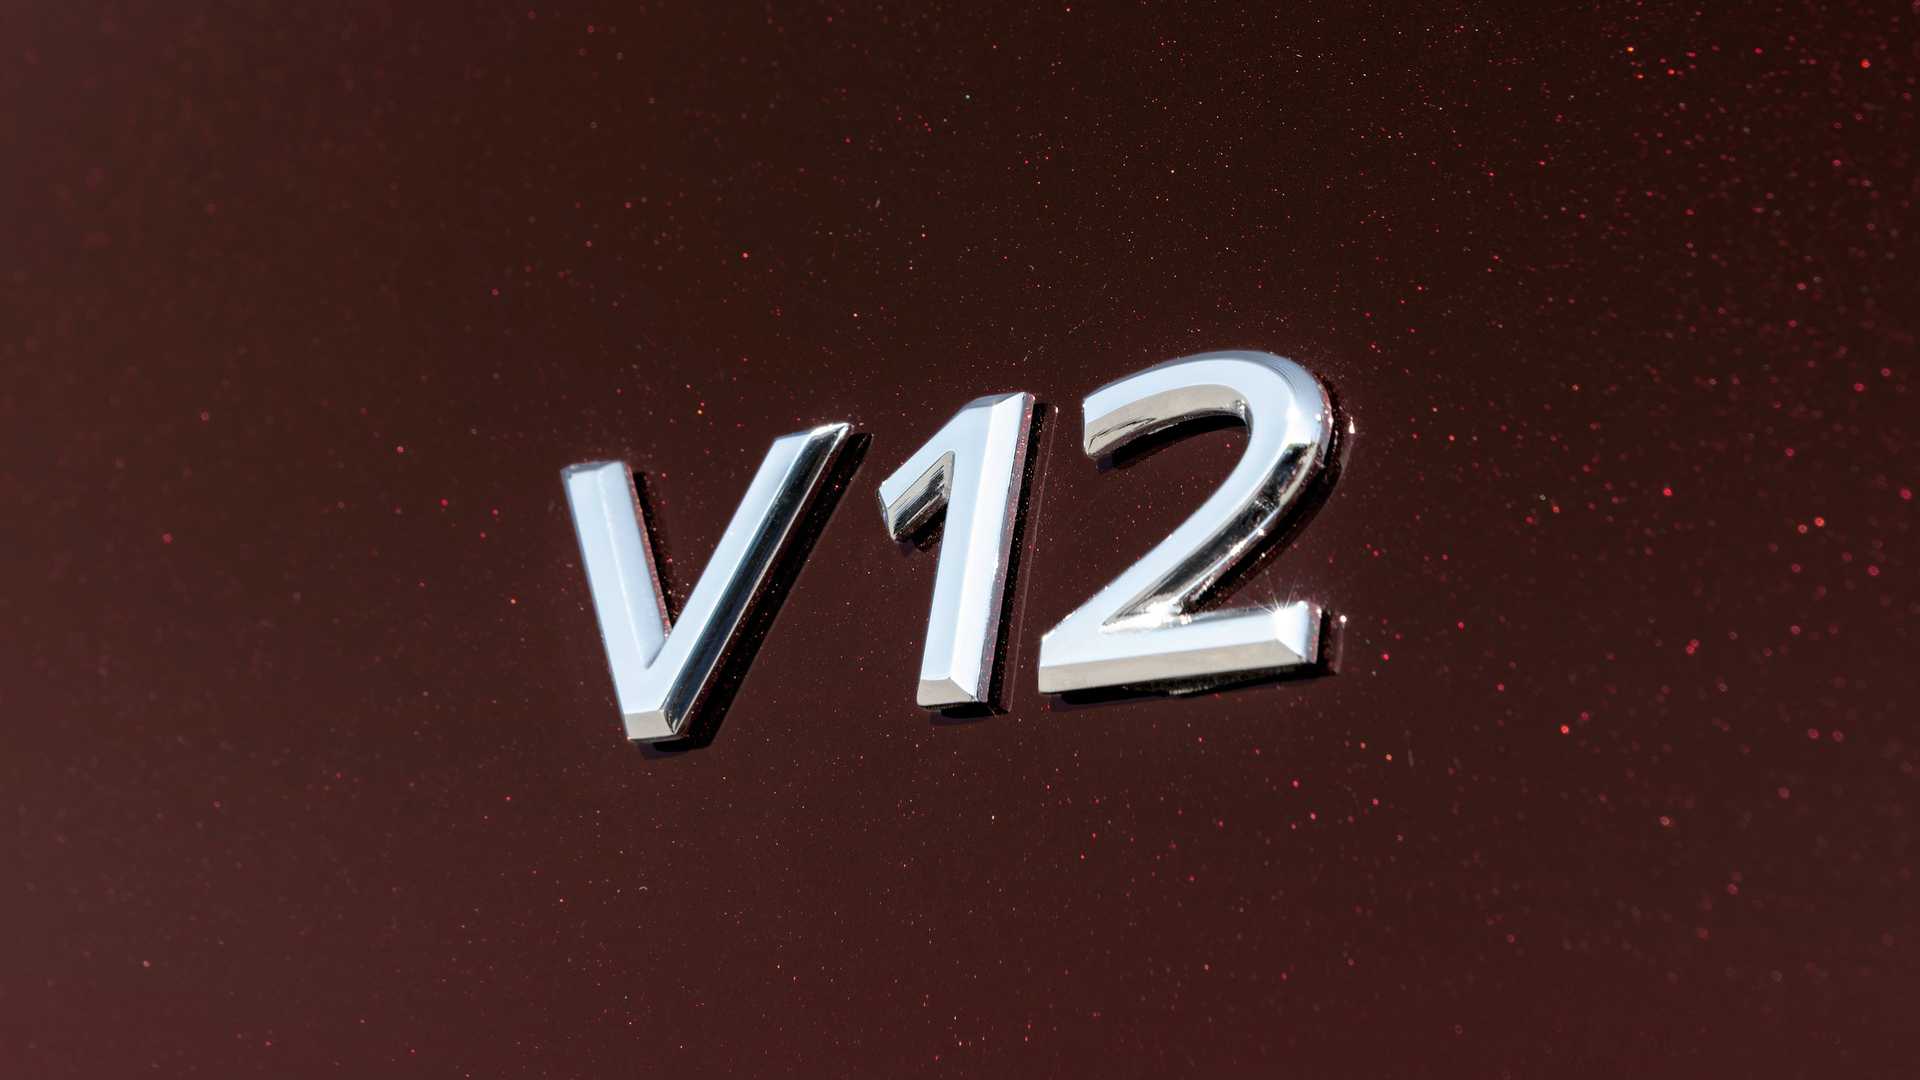 V12发动机+四驱 全新迈巴赫S680发布 低调奢华